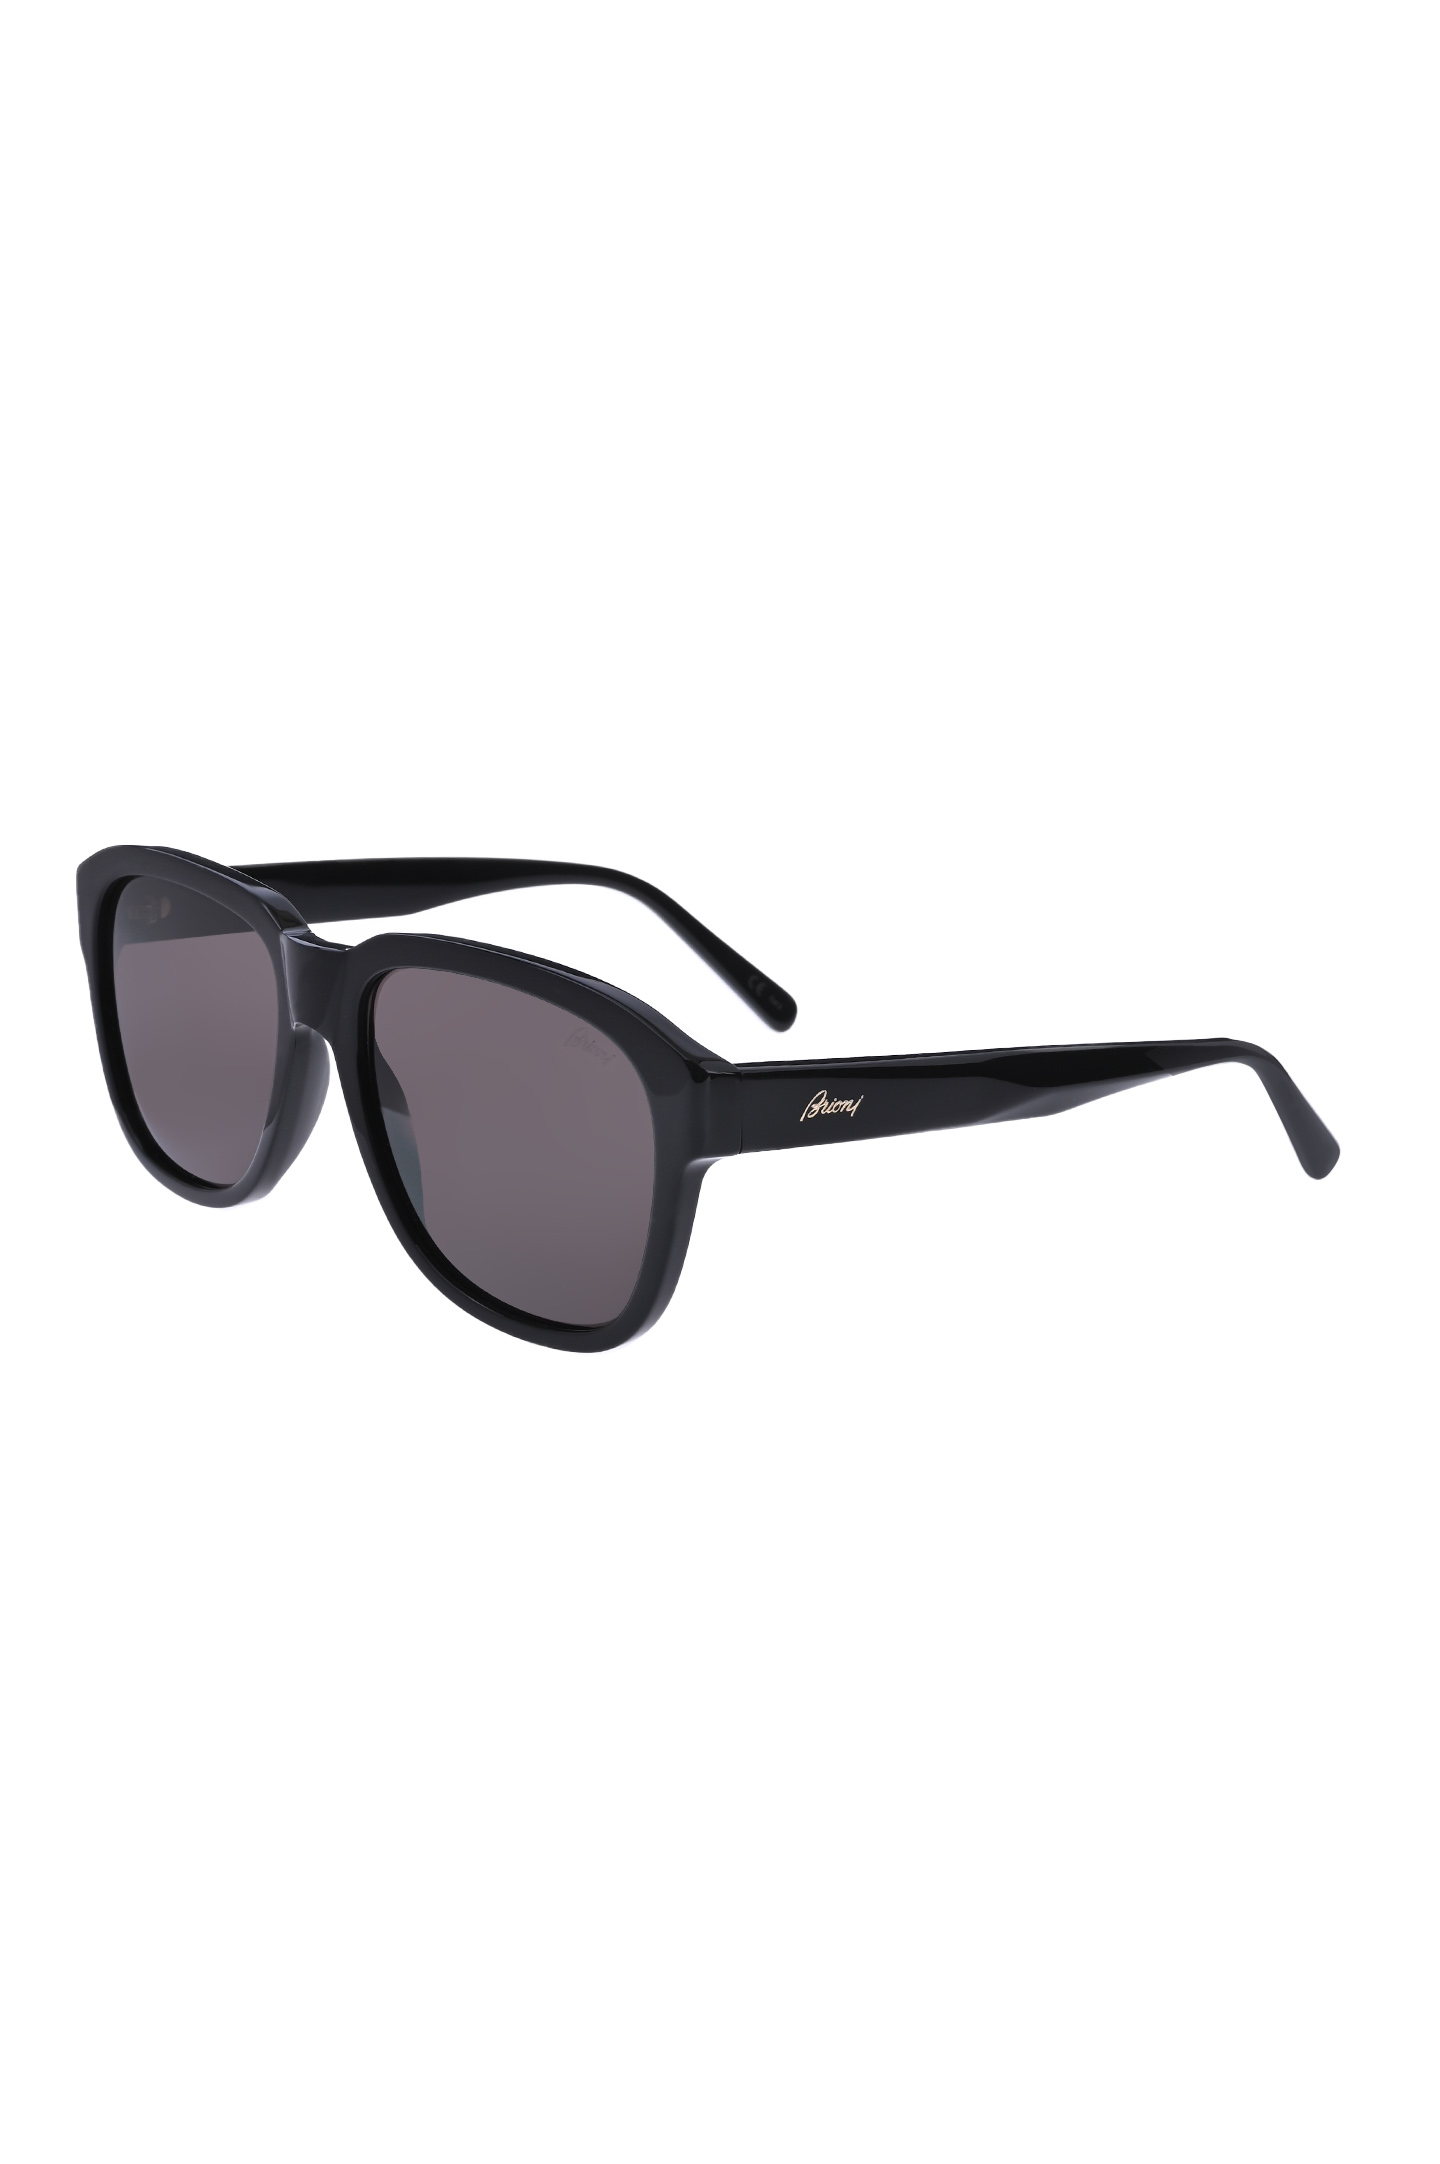 Солнцезащитные очки BRIONI ODE300 P3ZAC, цвет: Черный, Мужской